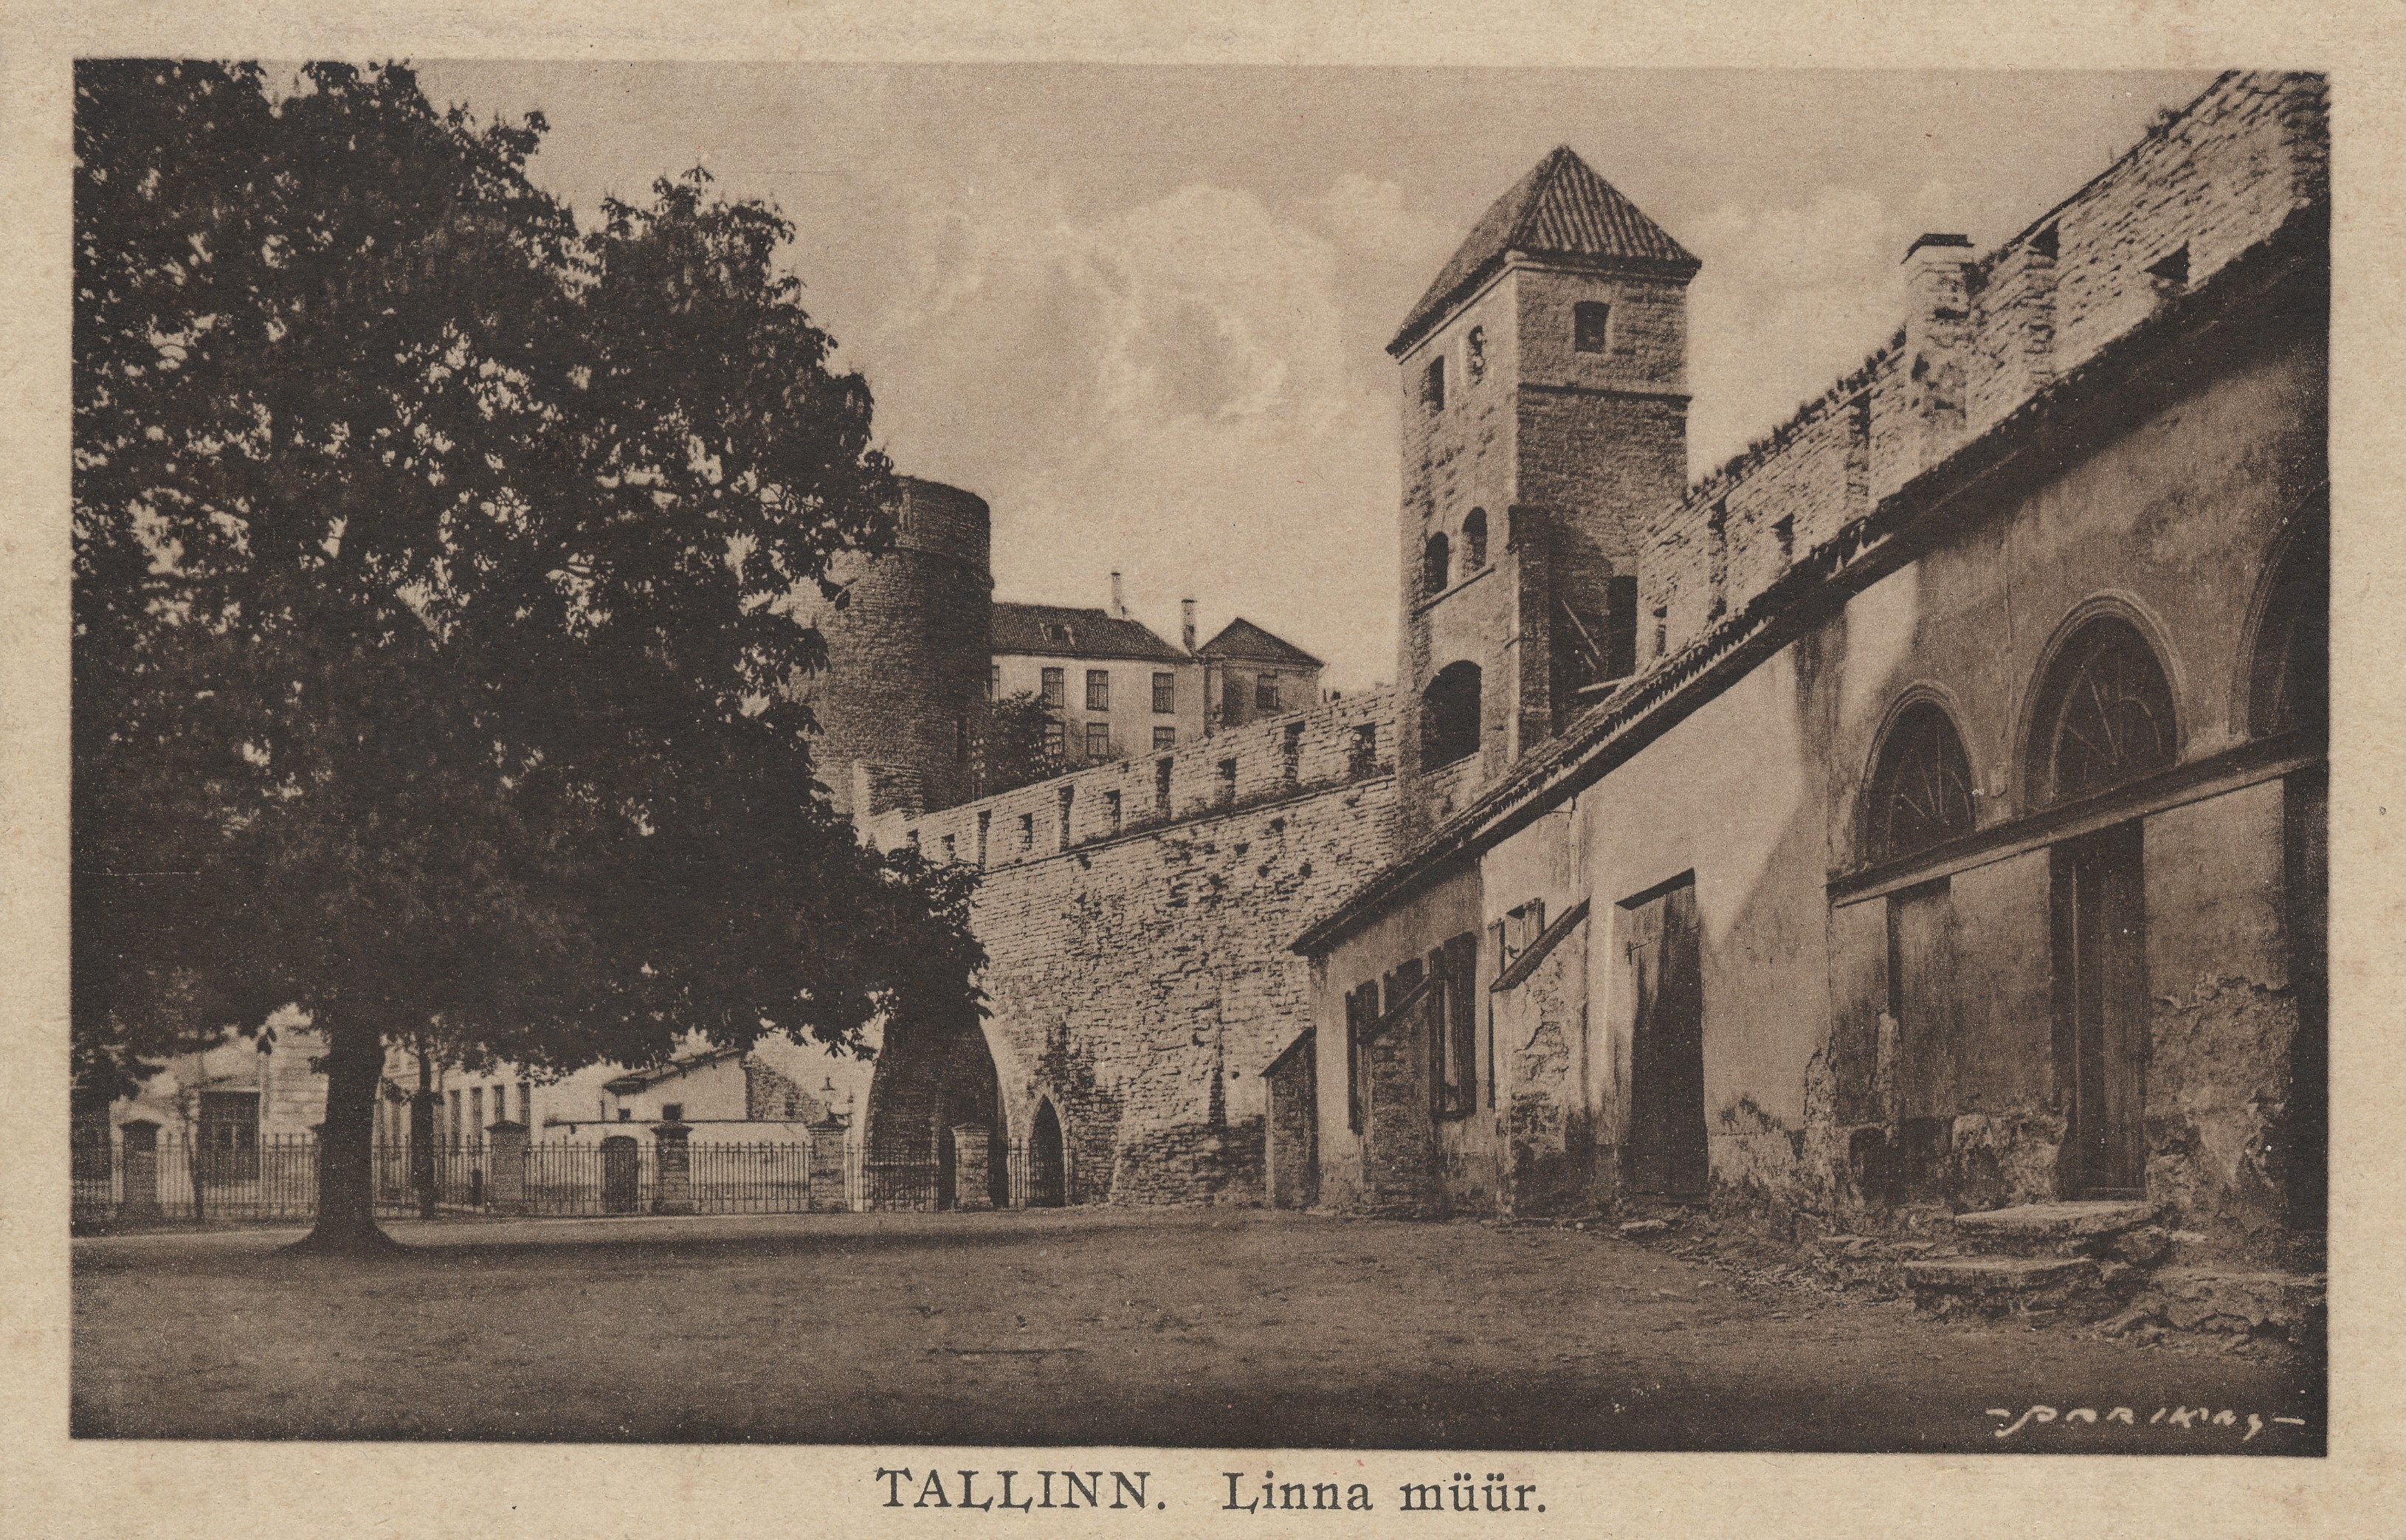 Tallinn : the wall of the city